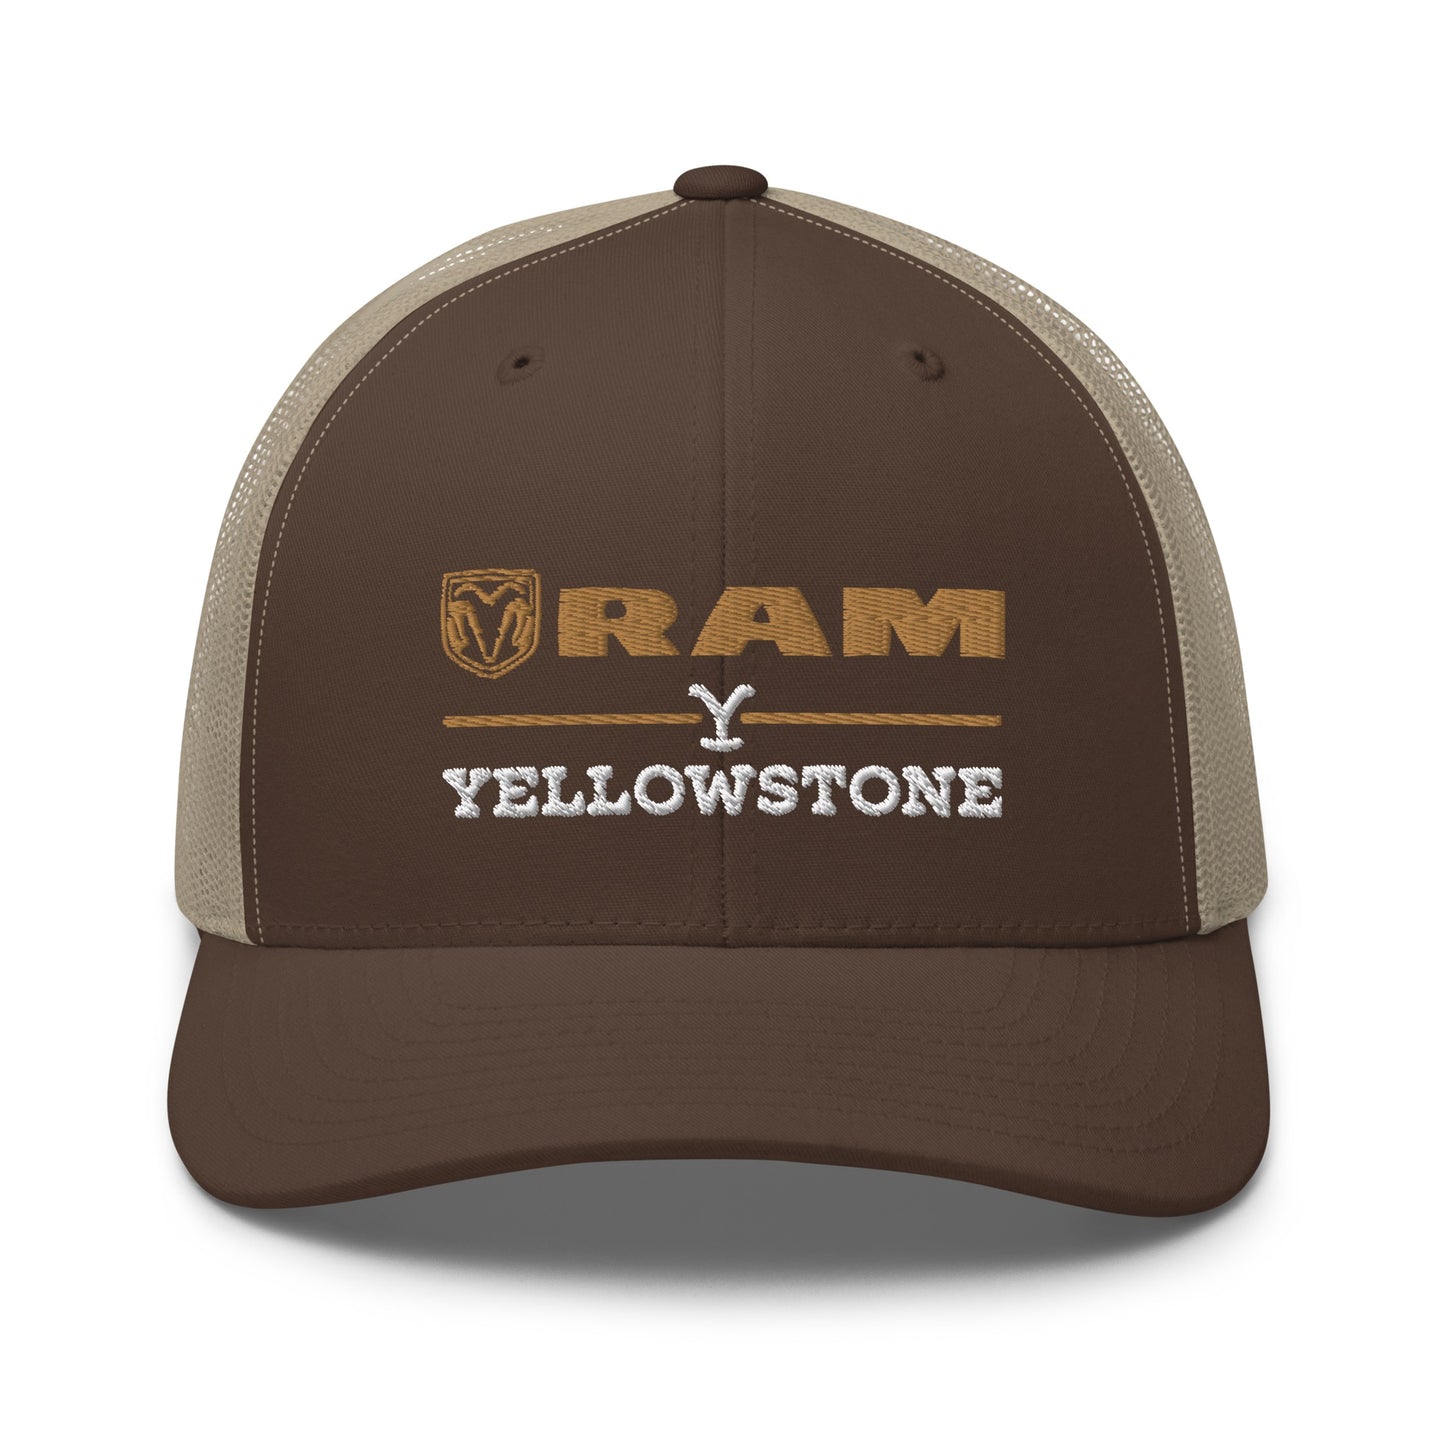 Yellowstone x Ram Trucker Hat